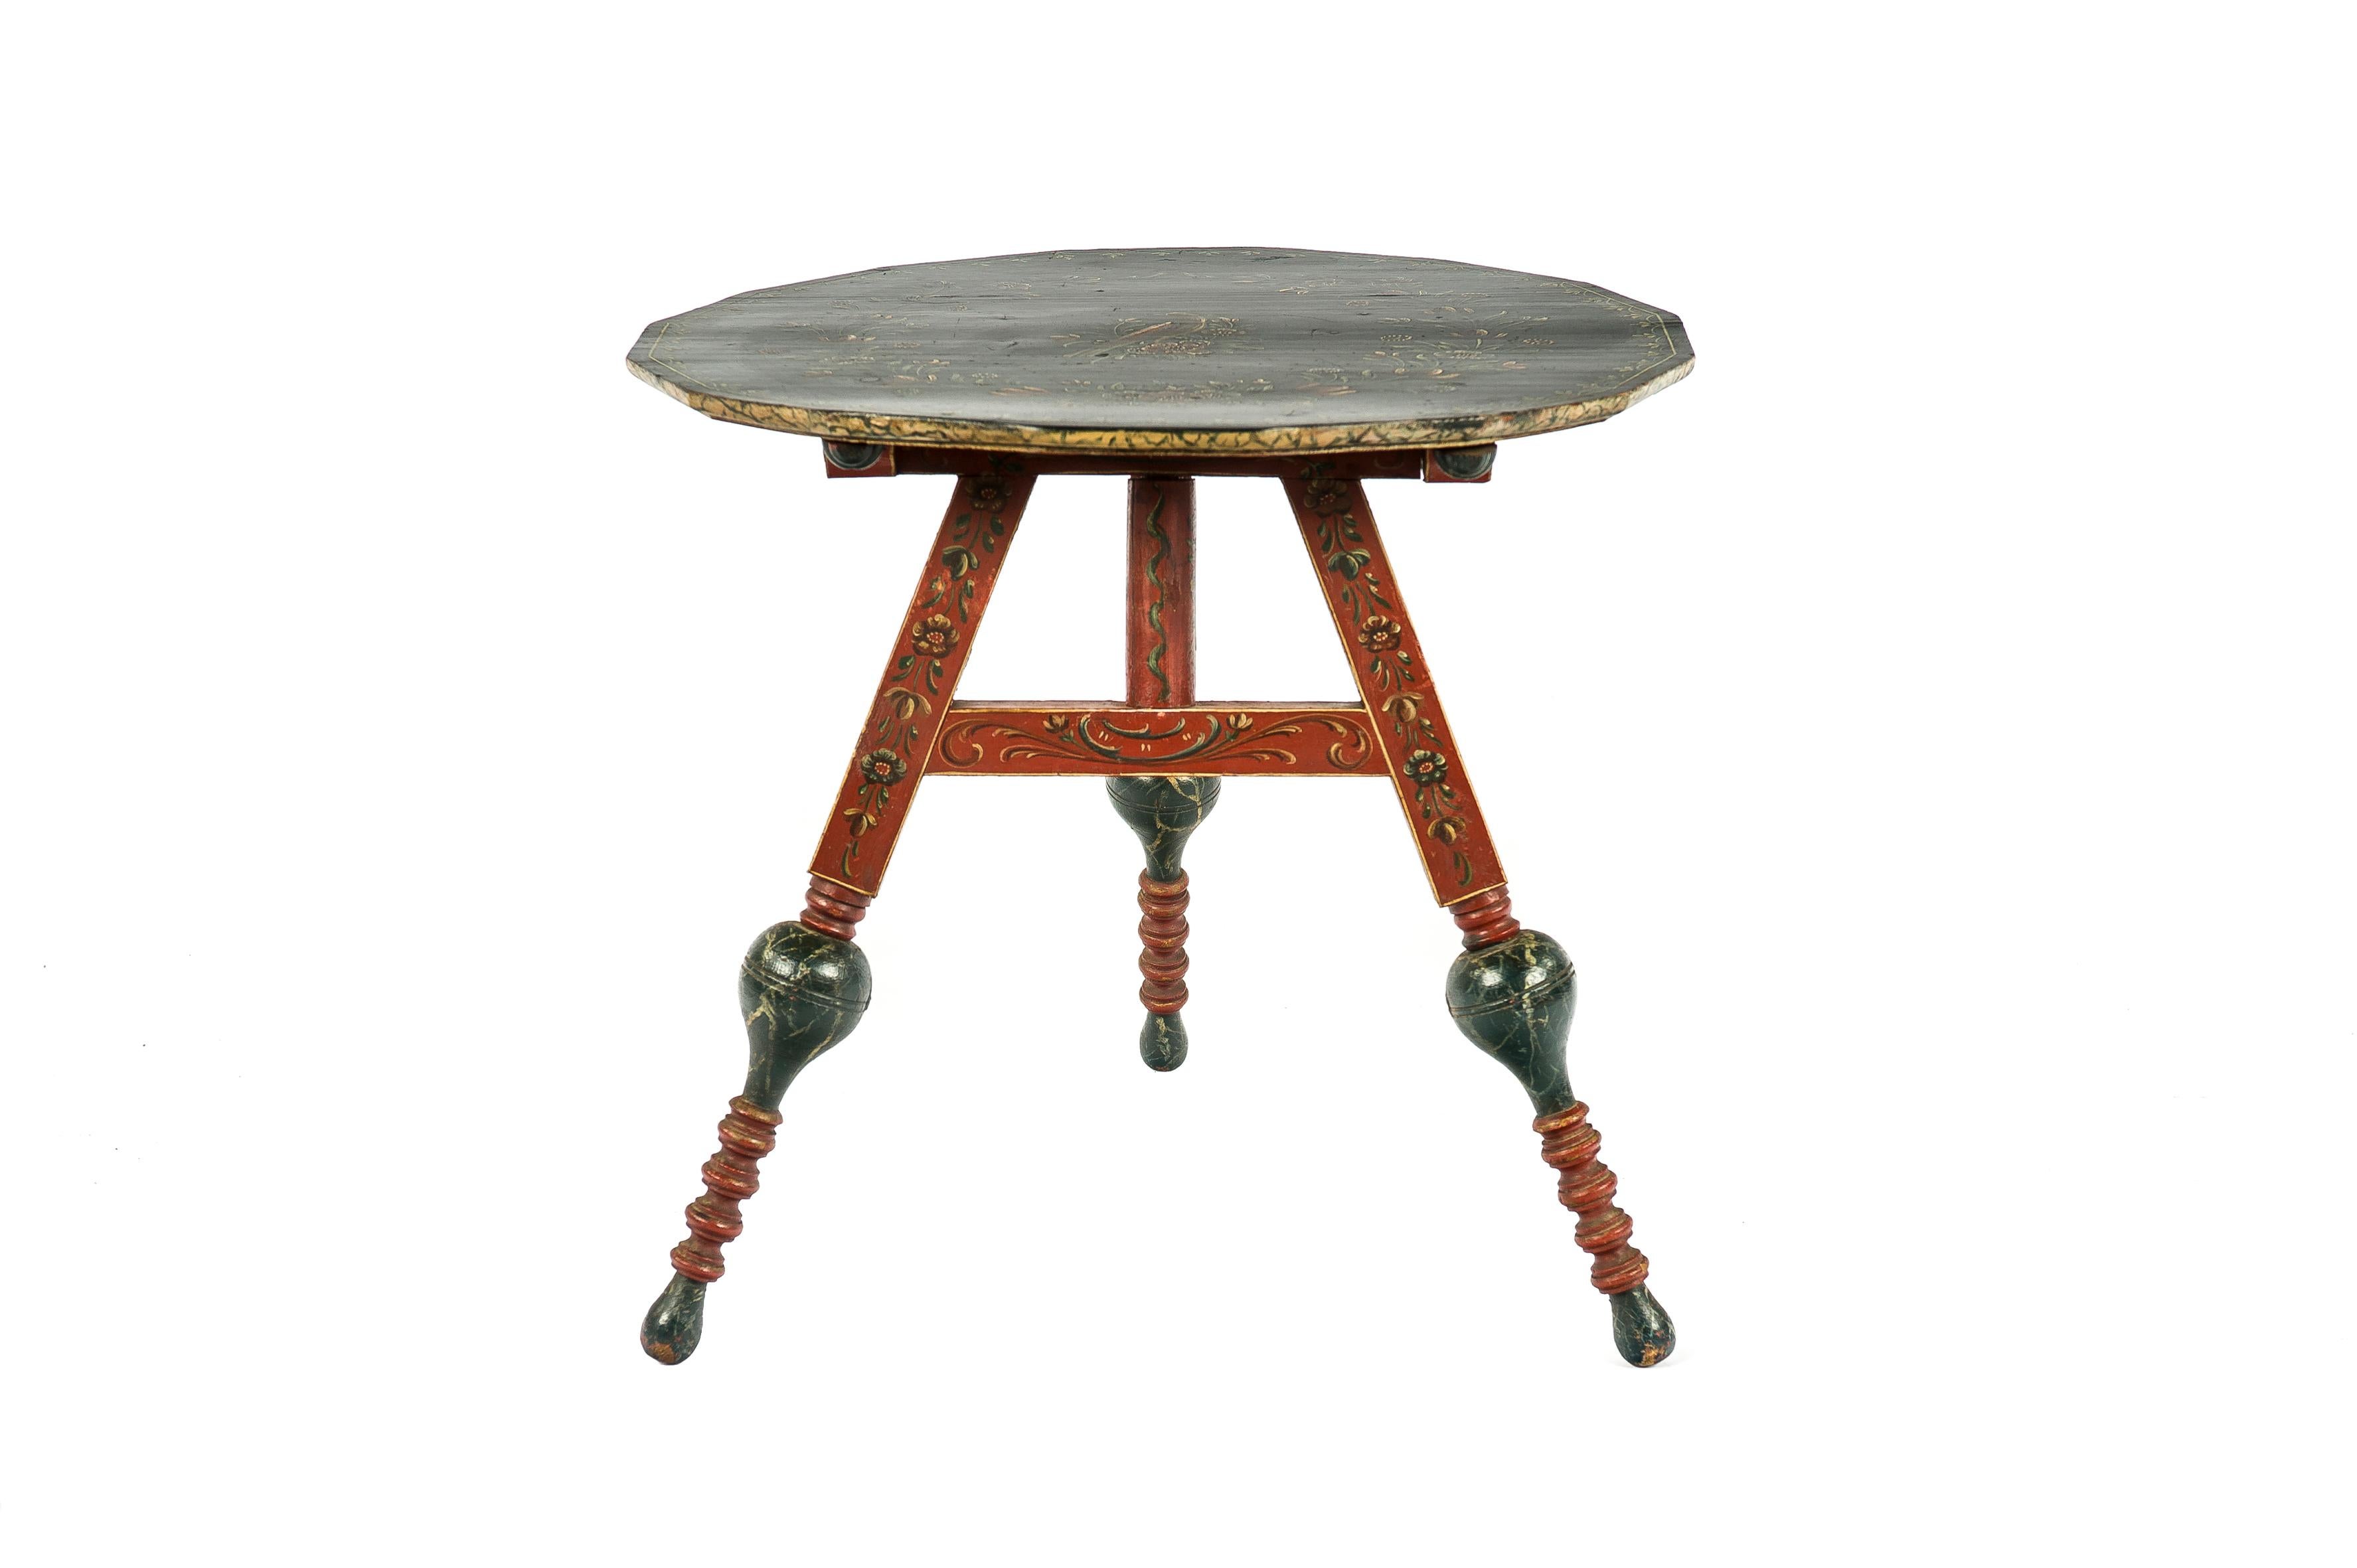 Ein schöner antiker Kipptisch, der in den nördlichen Niederlanden, genauer gesagt in Hindeloopen, in den späten 1800er Jahren hergestellt wurde. Der Tisch ist aus massivem Kiefernholz gefertigt und komplett dekoriert. In den Niederlanden heißen die